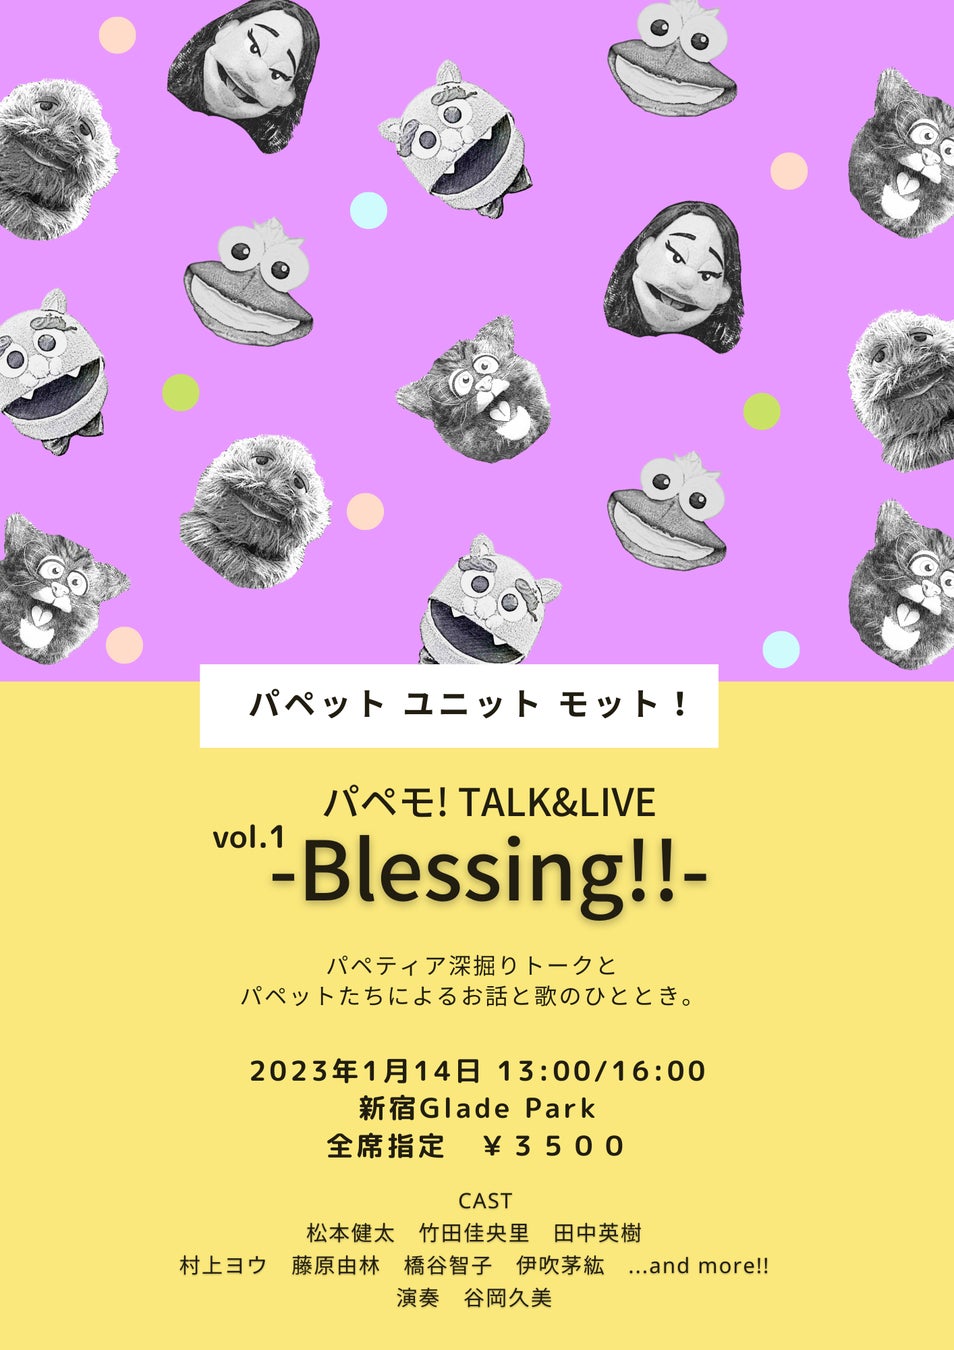 日本版セサミストリートメンバーが中心で立ち上げたパペット ユニット モット！1周年記念イベント『パペモ! TALK&LIVE vol.1 -Blessing!!-』開催！　カンフェティにてチケット販売のサブ画像1